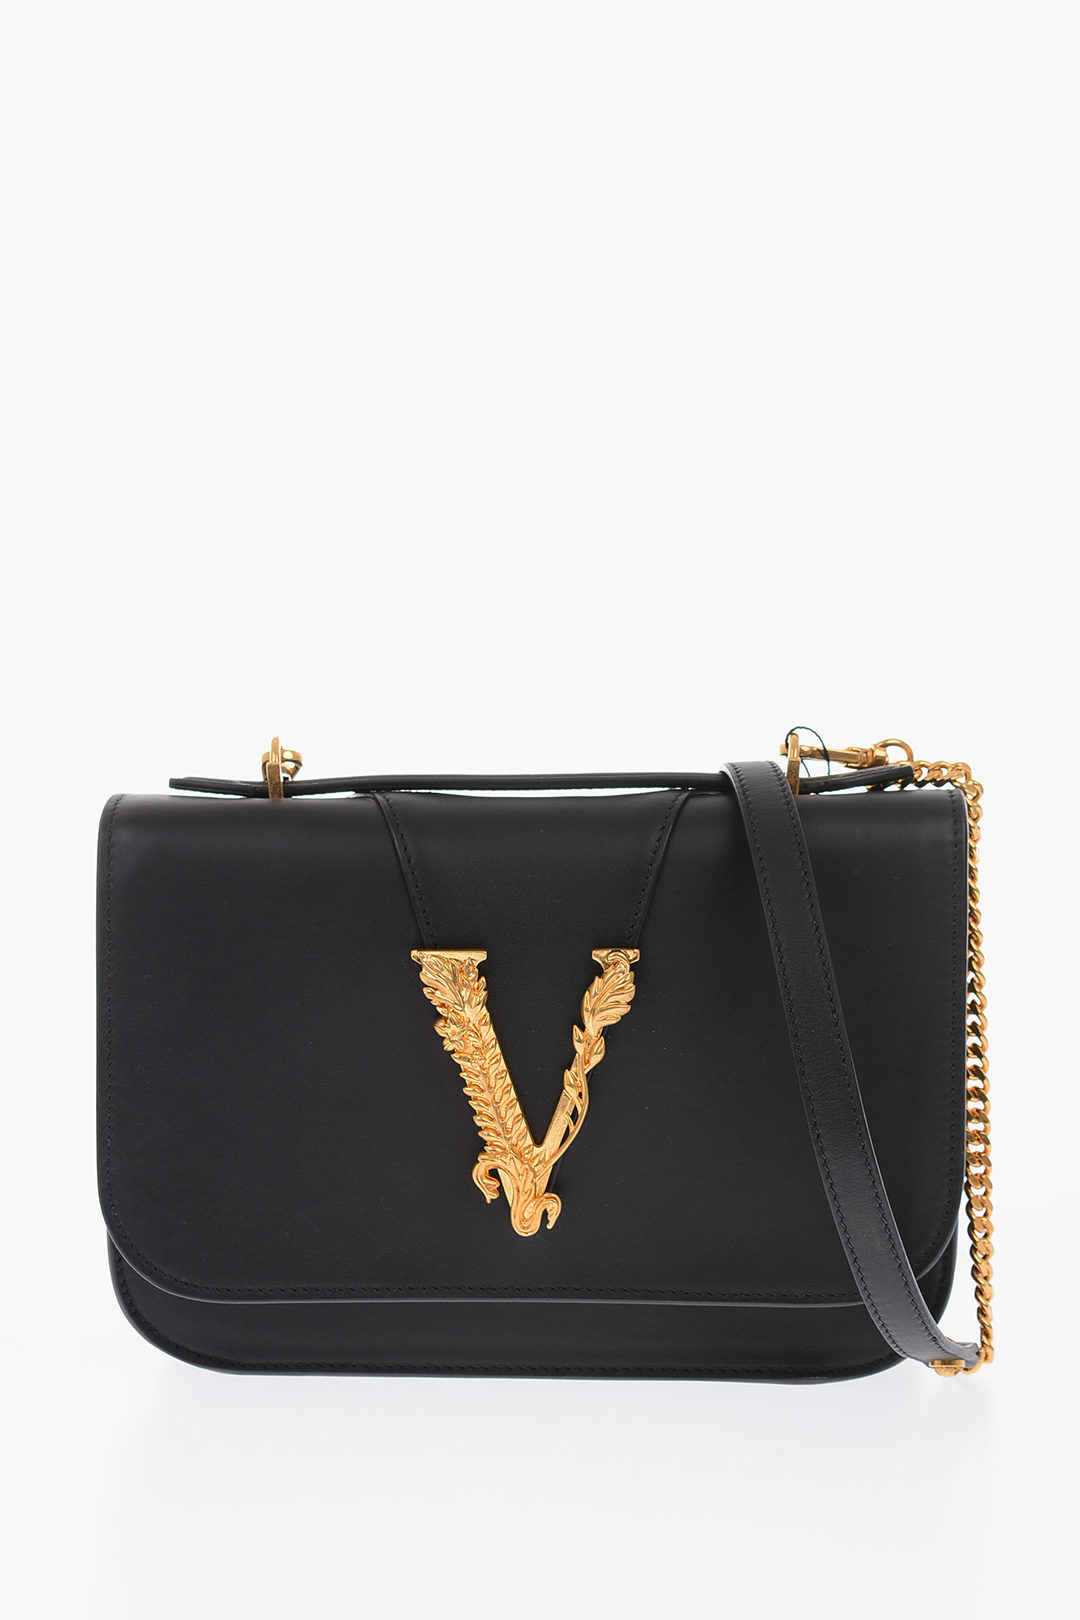 Versace India  Buy Luxury Versace Watches  Handbags Online  Luxepoliscom